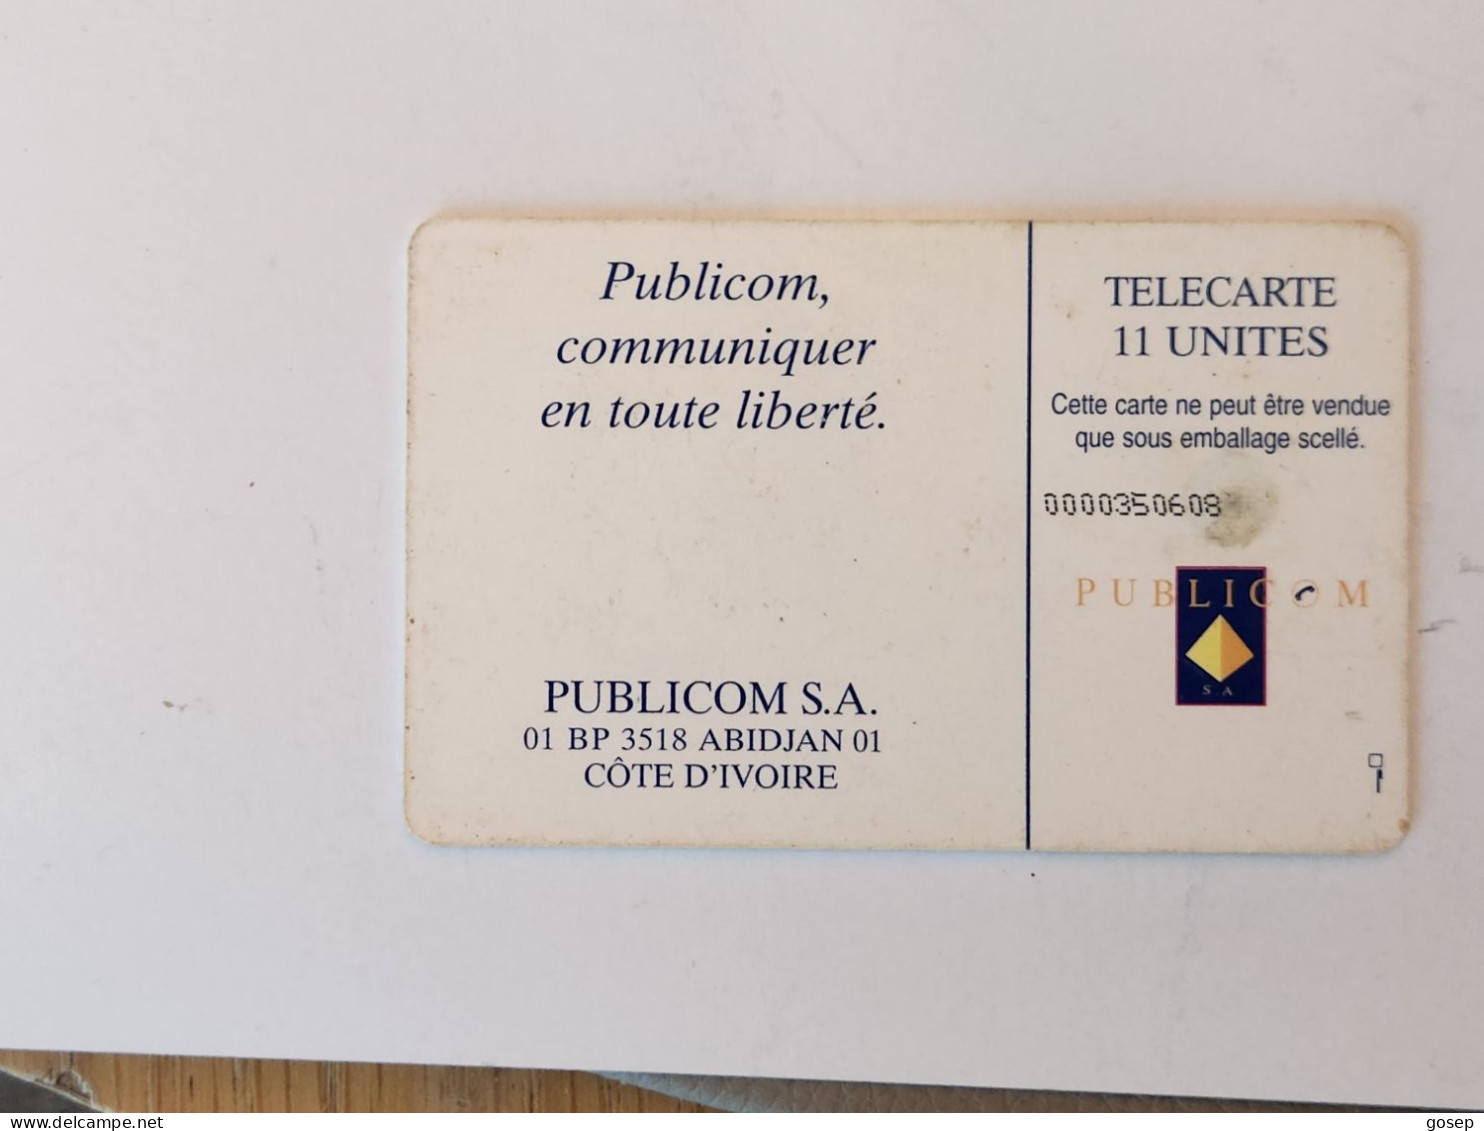 Ivory Coast-(CI-PUB-REF-0005B)-LOGO-(28)-(publicom)-(0000350608)-used Card+1card Prepiad Free - Costa D'Avorio